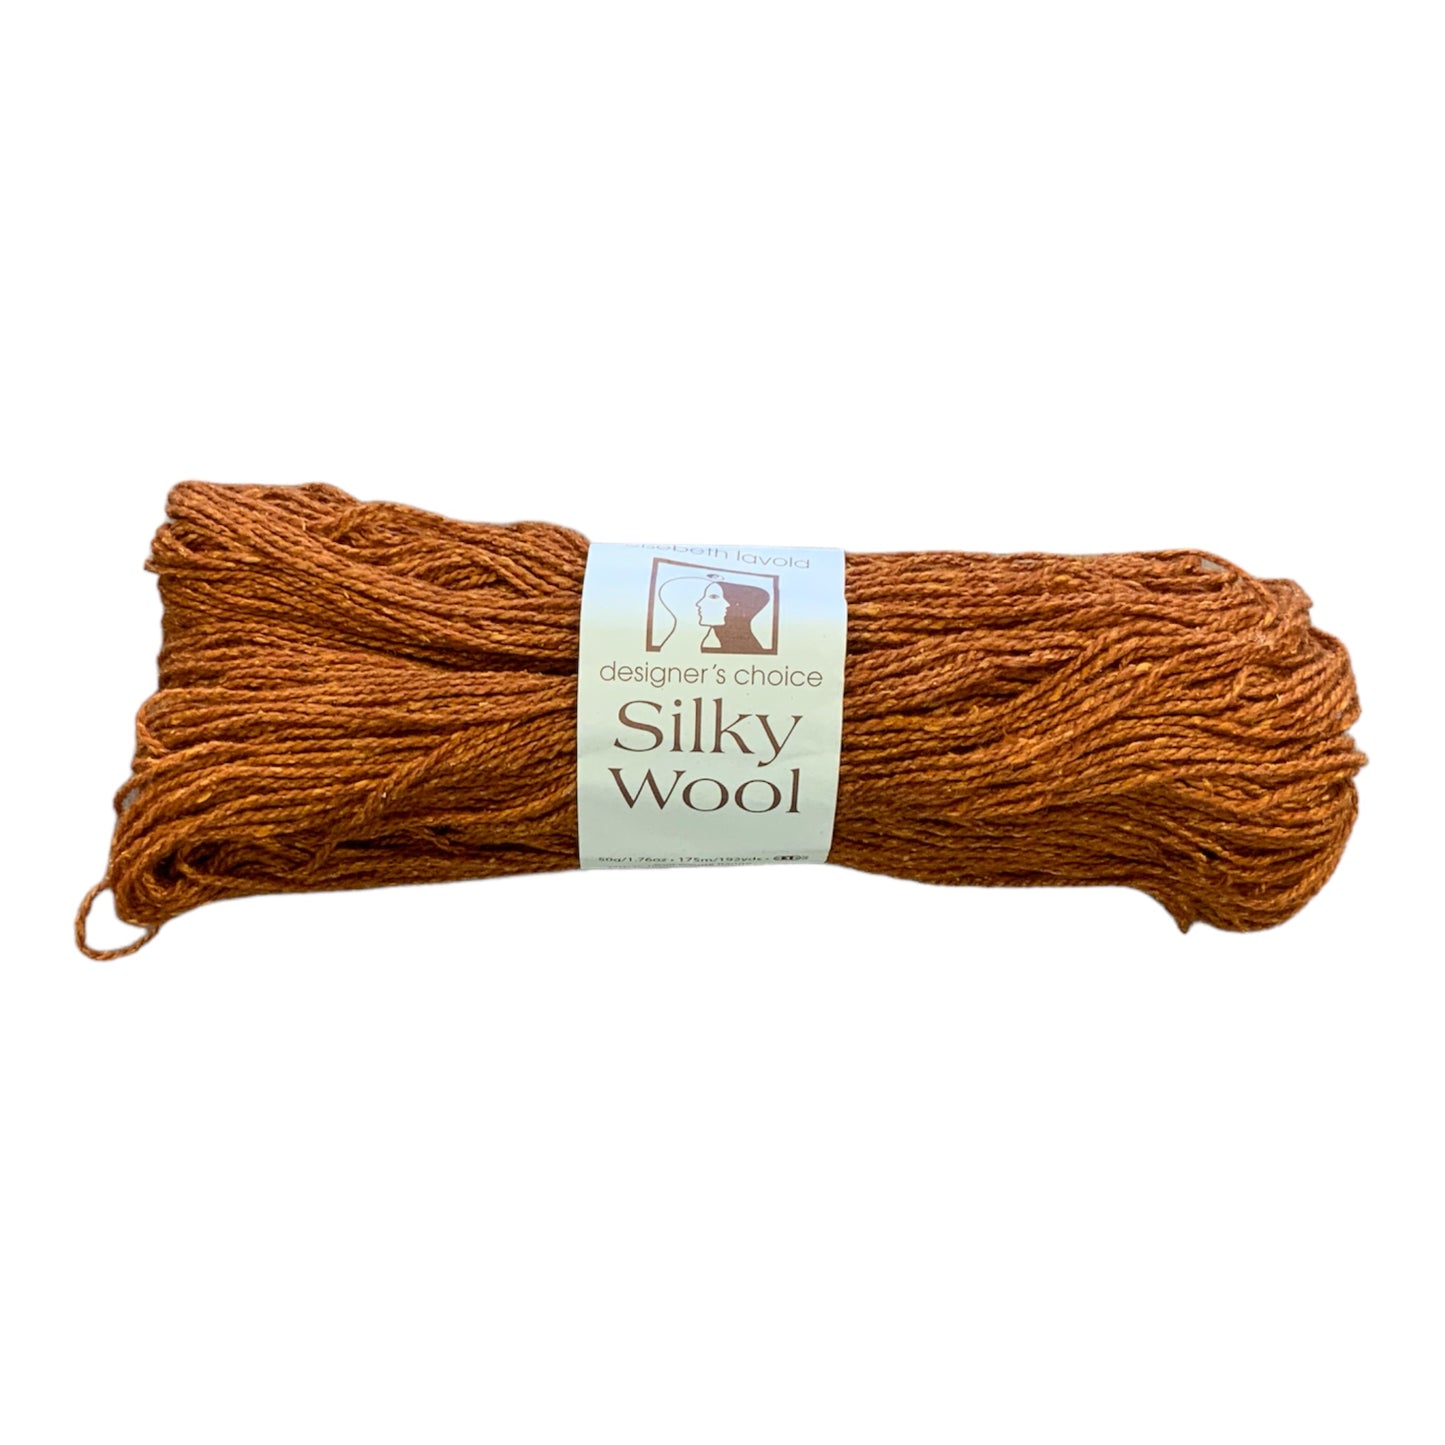 Silky Wool